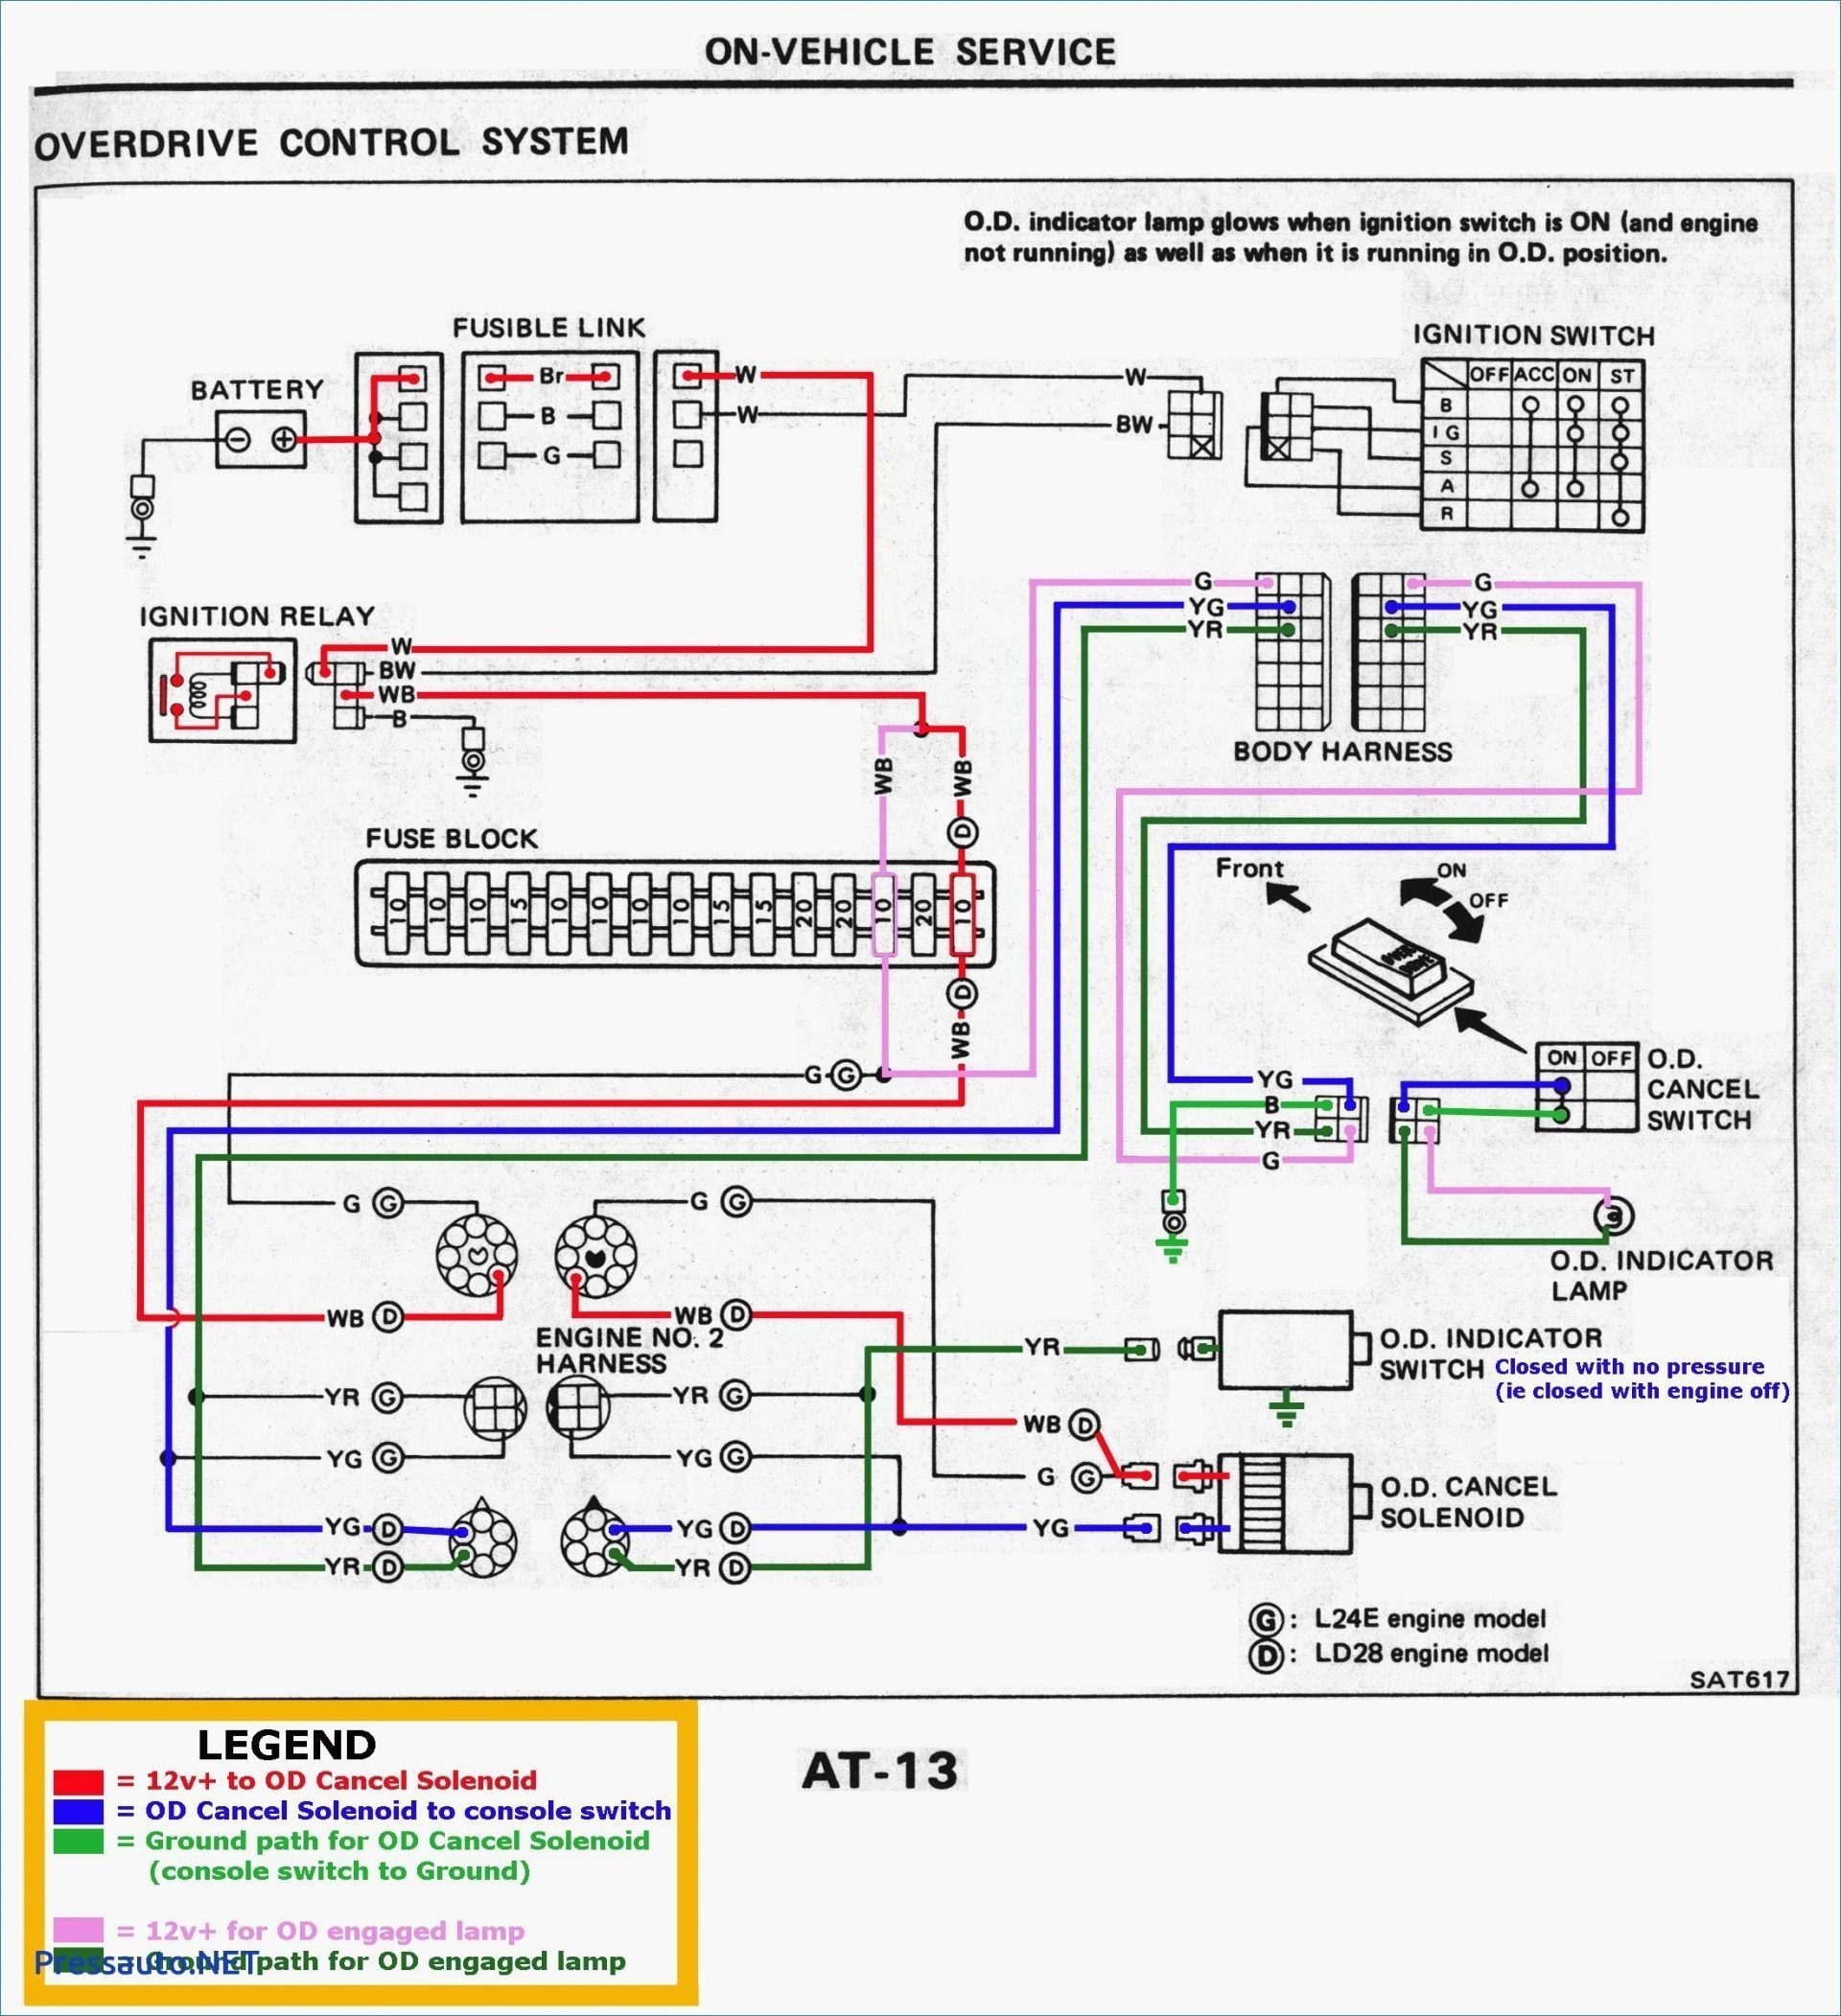 Alternator Wiring Diagram Pdf Reference Wiring Diagram for Car Alternator New Wiring Diagram Automotive